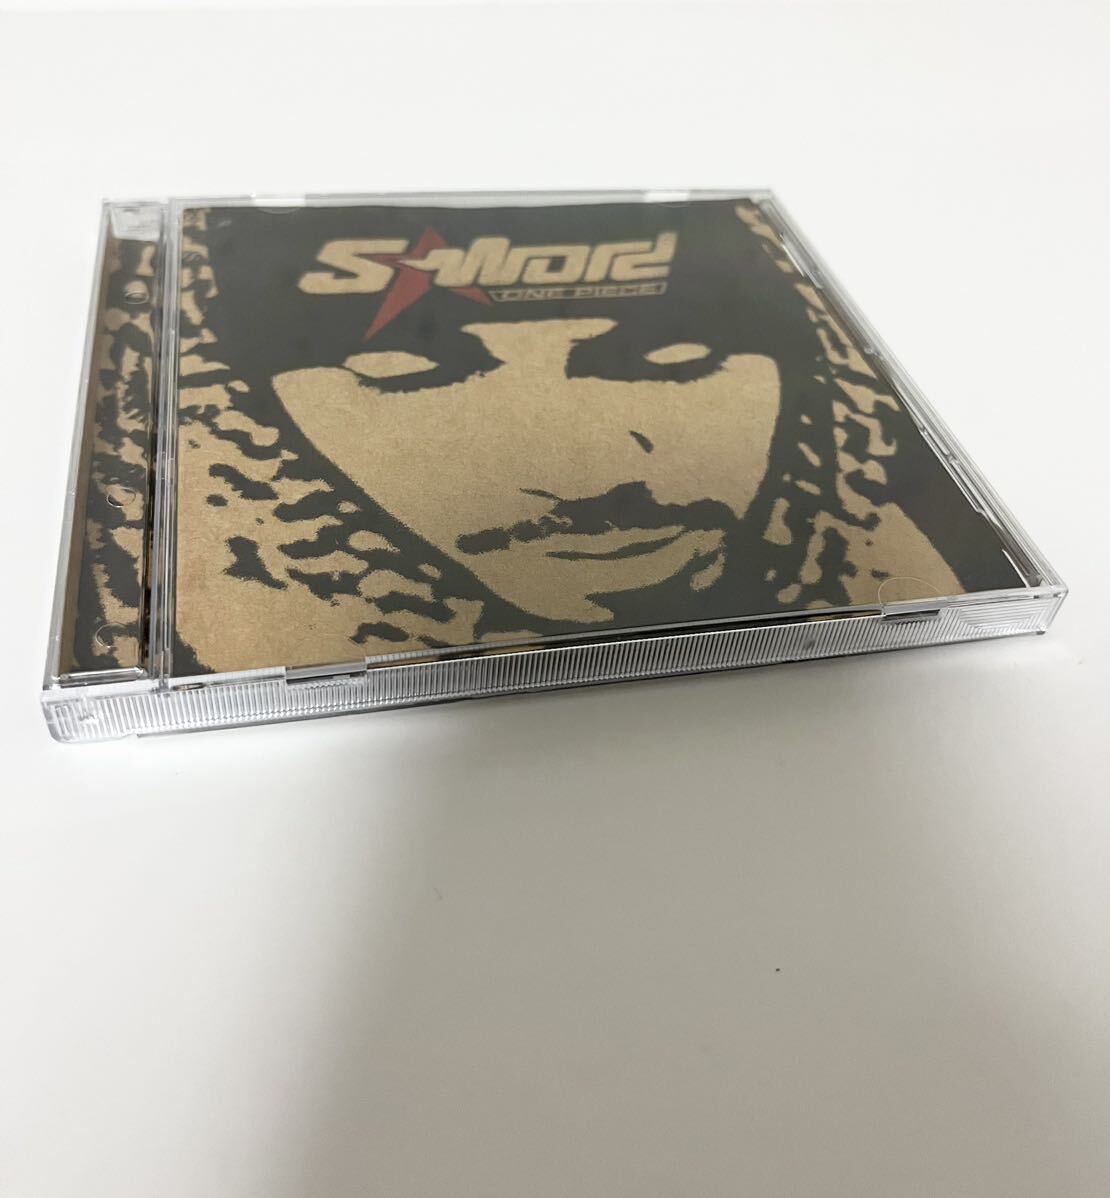 【送料無料・即決】S-WORD / ONE PIECE CD NITRO MICROPHONE UNDERGROUND HIPHOP 日本語ラップ ヒップホップ アルバム デフ ジャム def jam